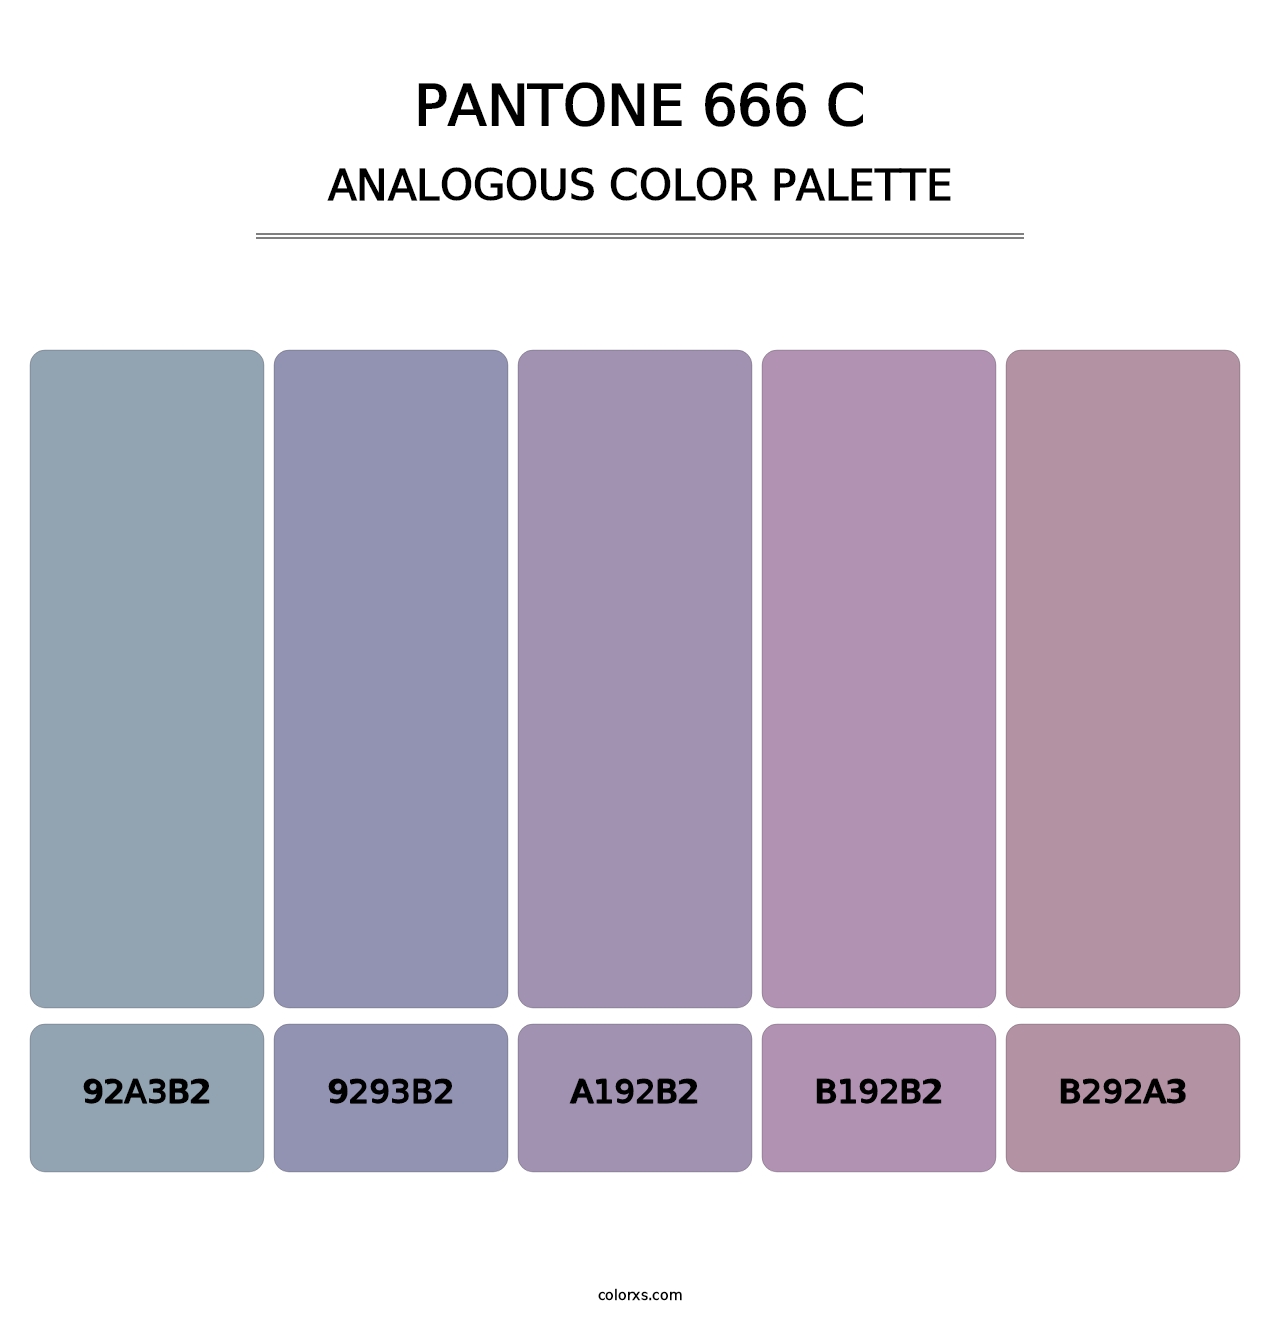 PANTONE 666 C - Analogous Color Palette